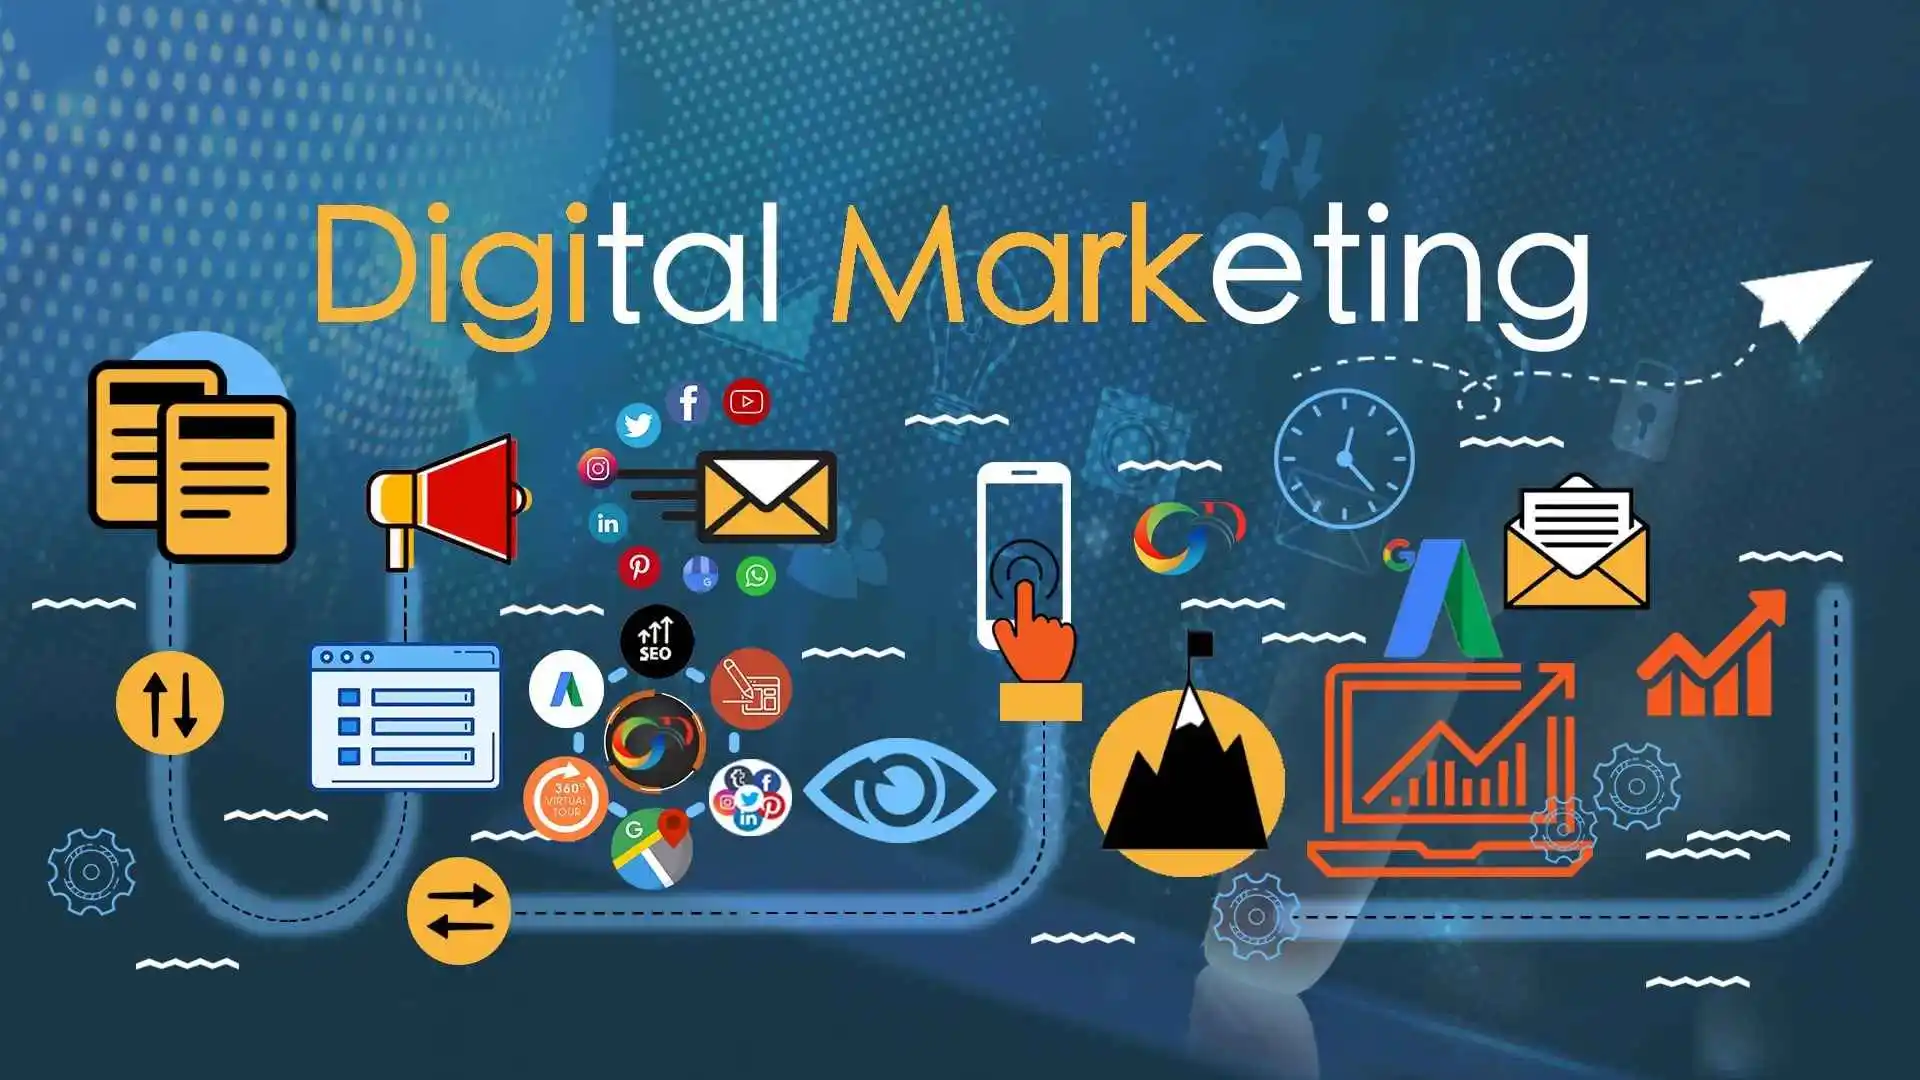 Why You Should Study Digital Marketing?